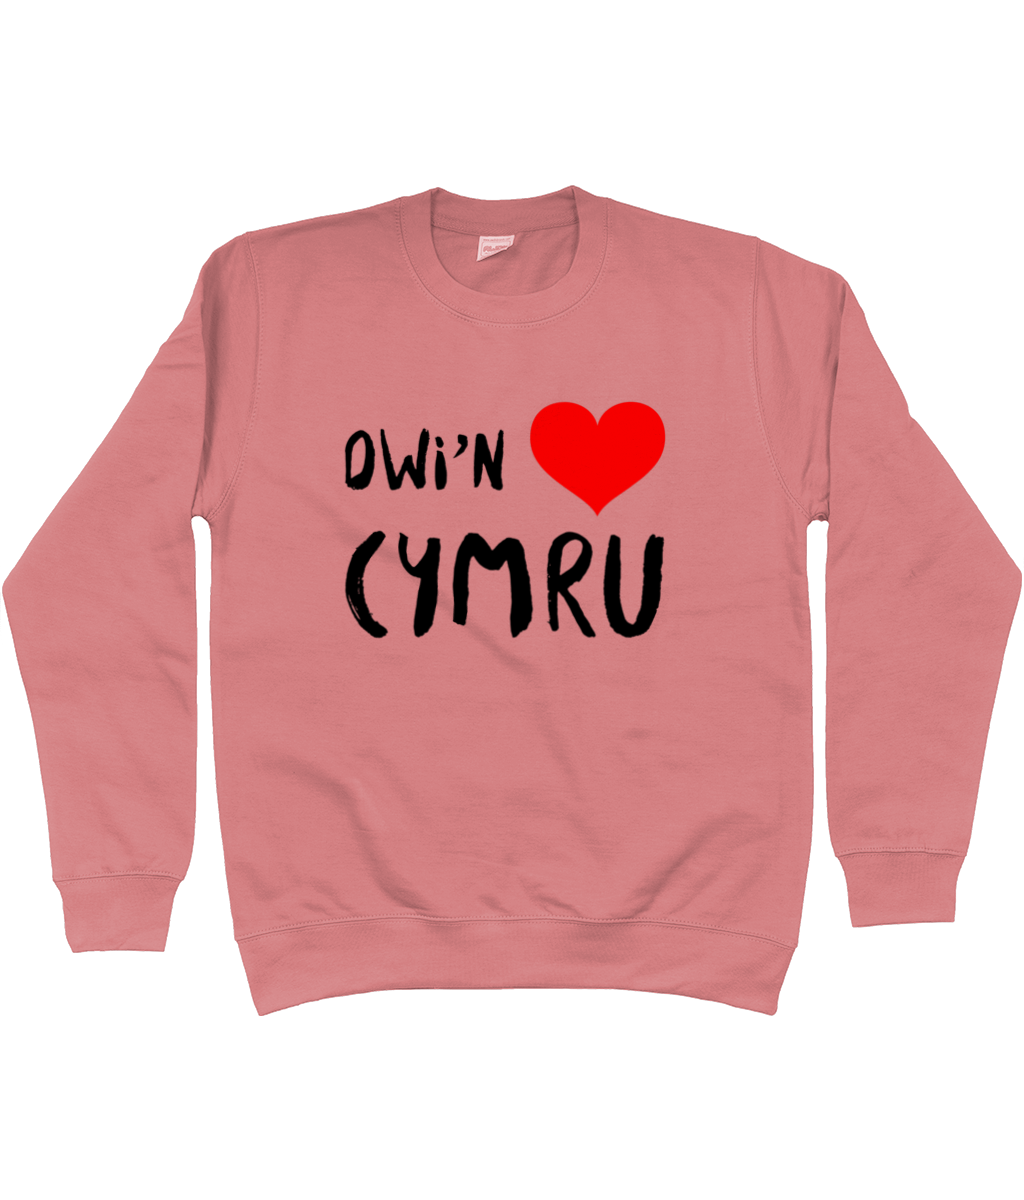 Dwi'n Caru Cymru - Crys chwys